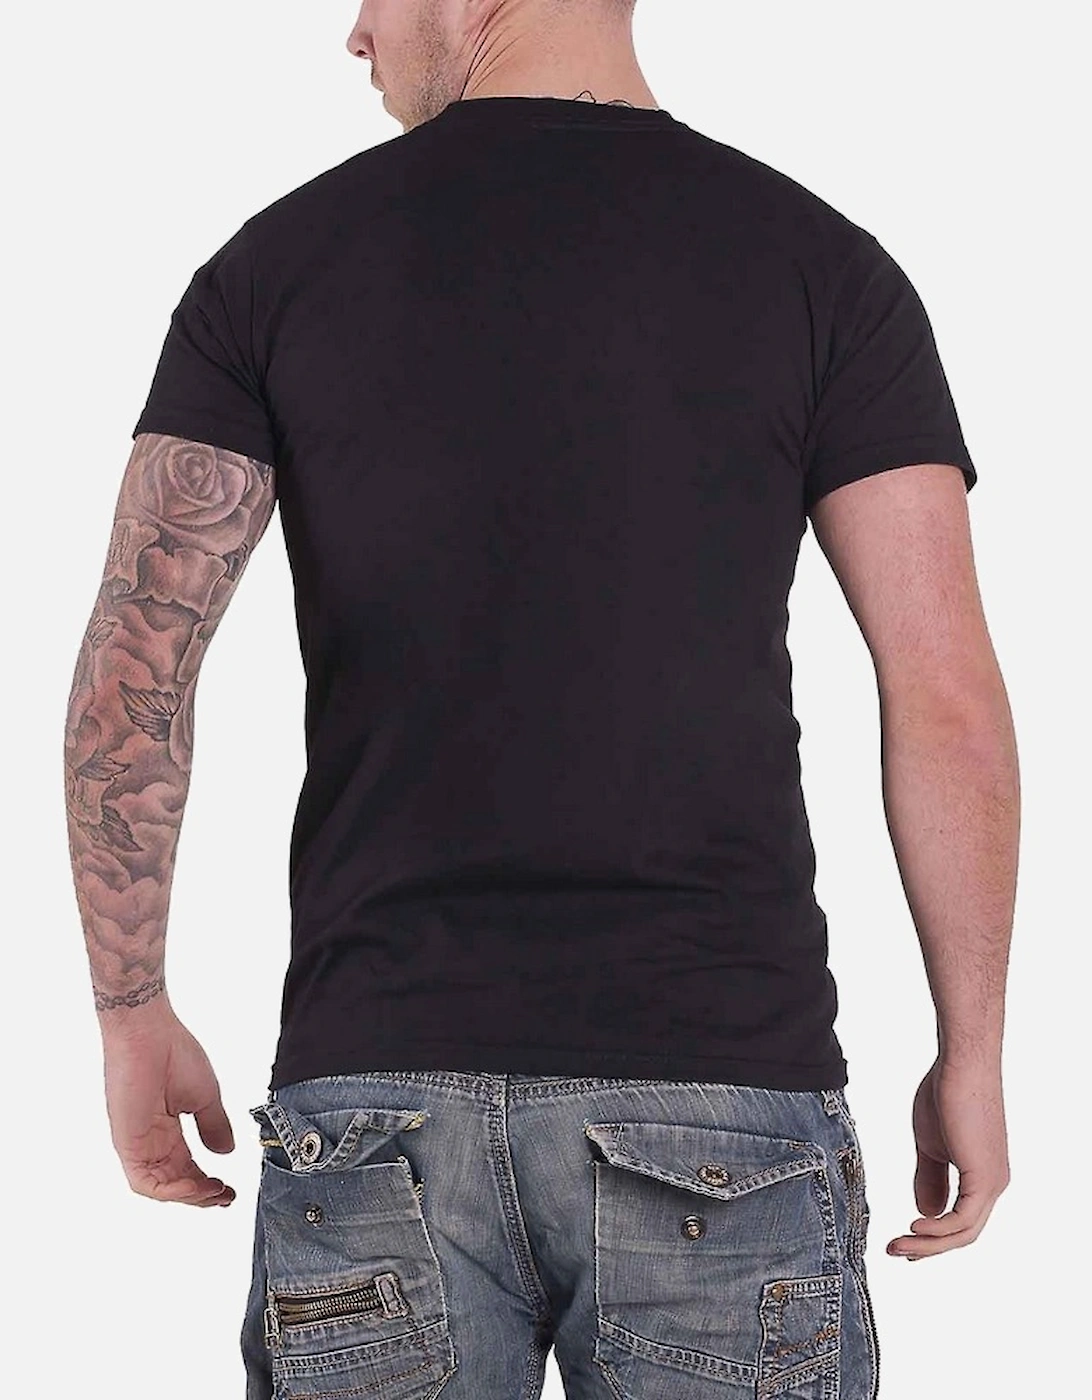 Unisex Adult Hands T-Shirt